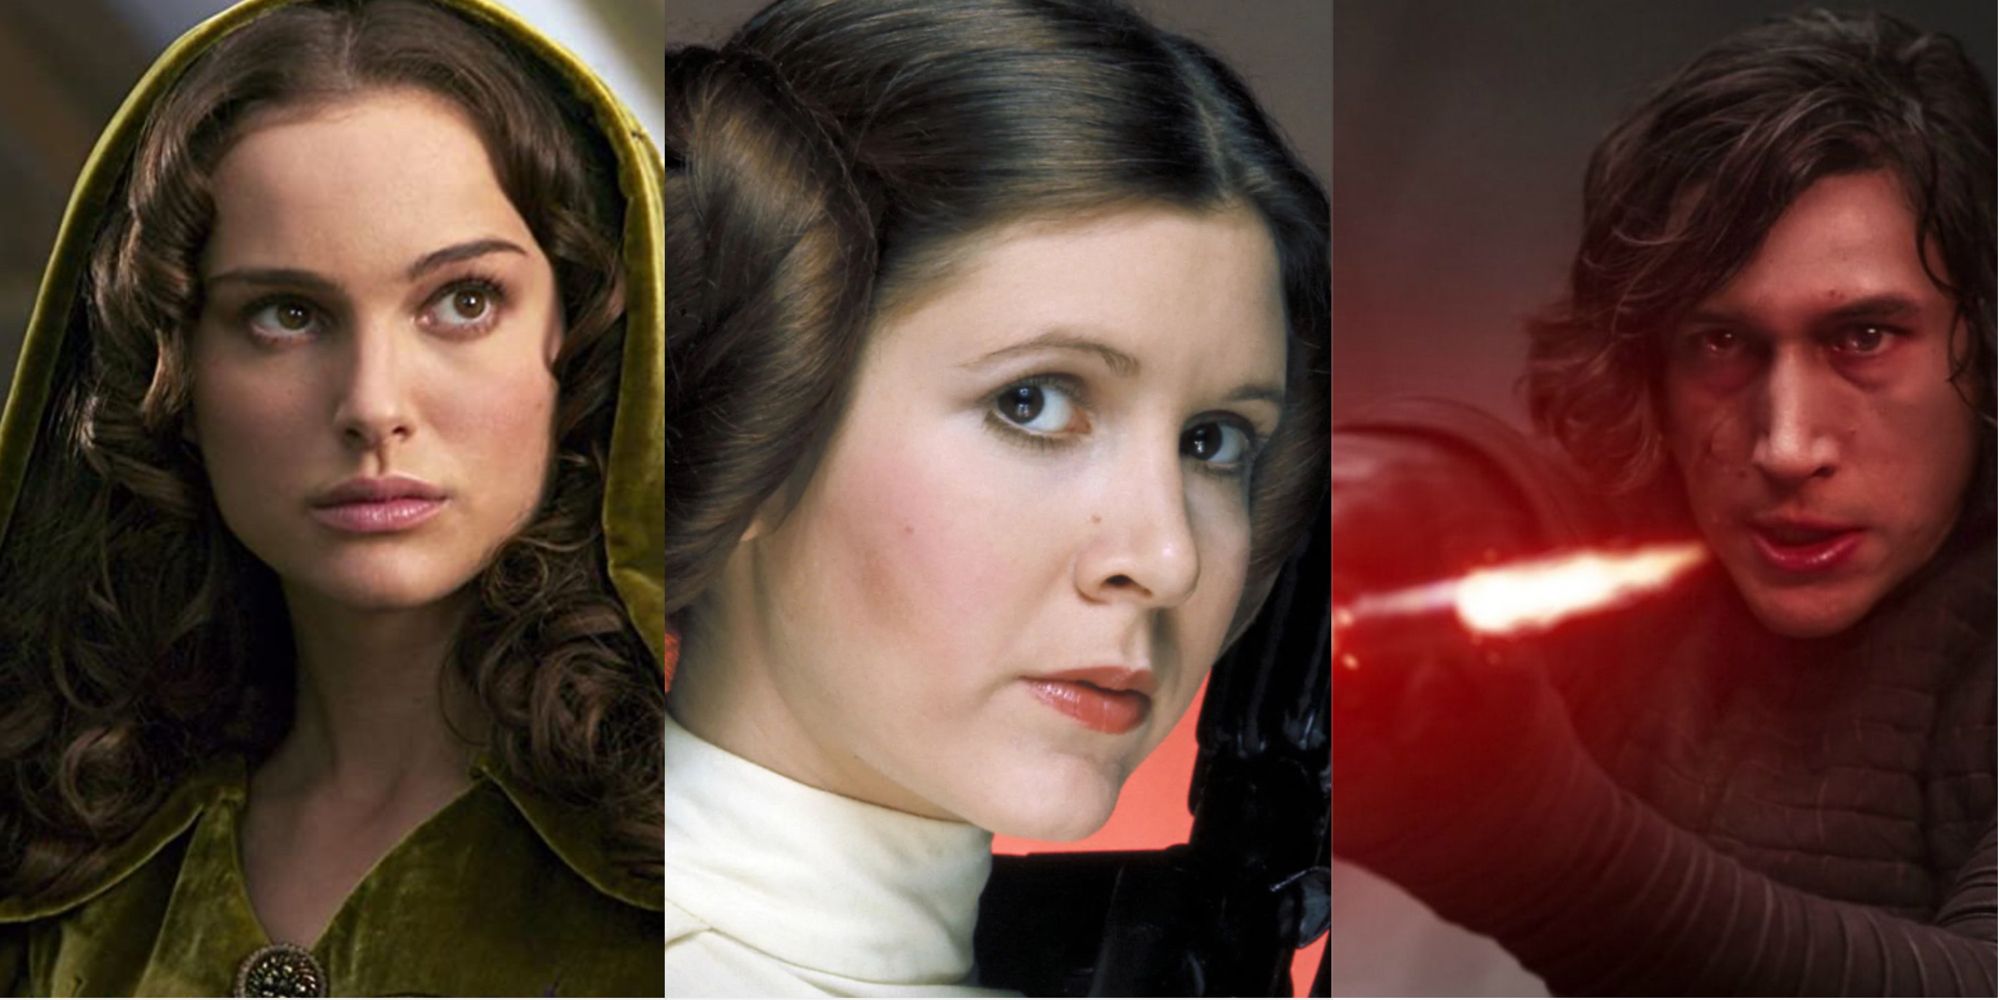 Star Wars Princess Leia Organa Ben Solo and Amidala